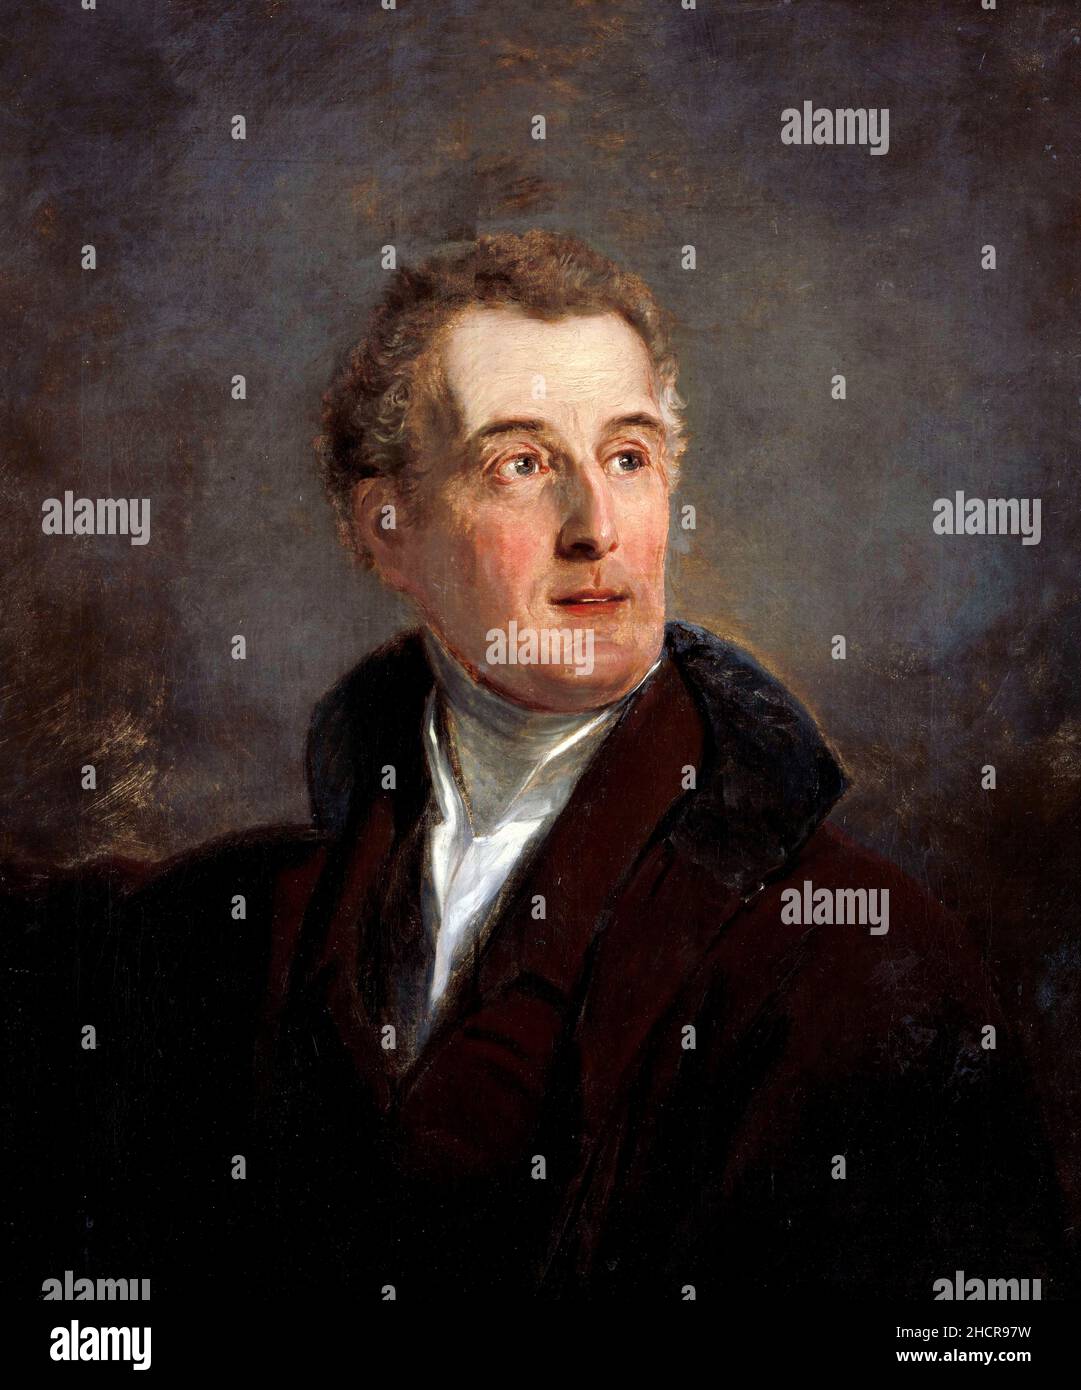 Portrait Study of Arthur Wellesley, duc de Wellington par Jan Willem Pieneman (1779-1853), huile sur toile, 1821. Banque D'Images